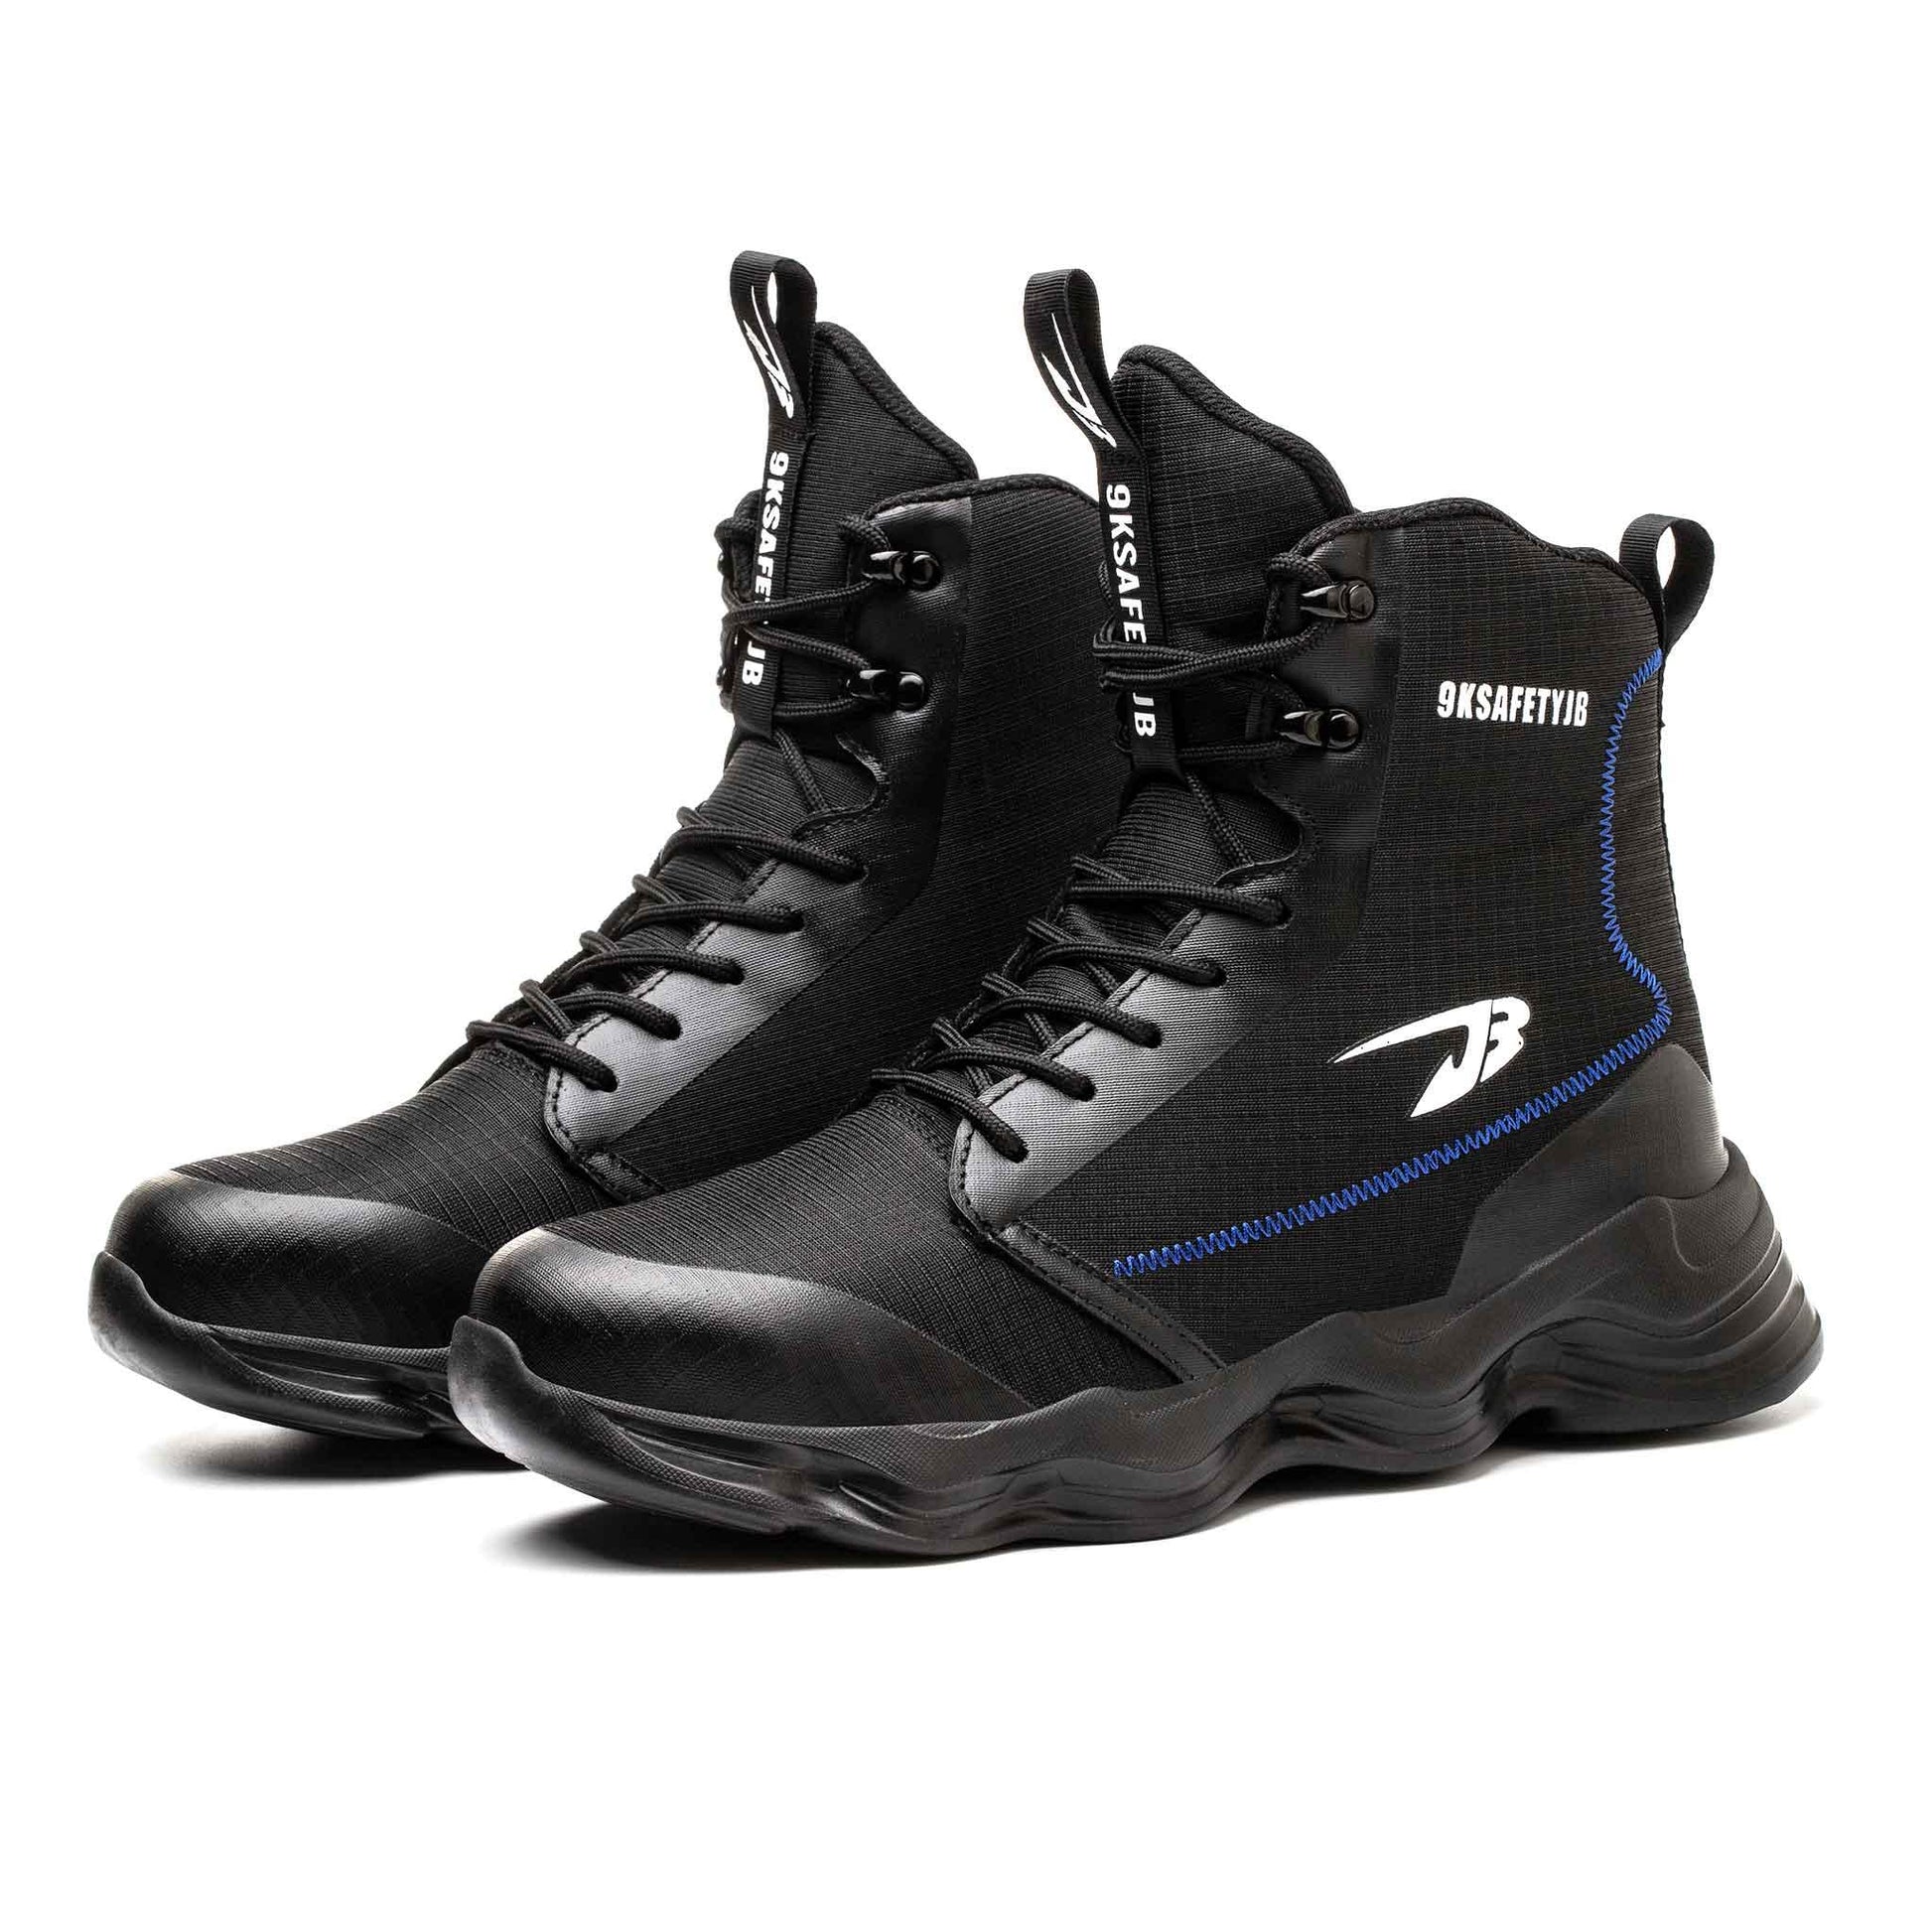 Men's 8" Steel Toe Boots - Slip Resistant | B158 - USINE PRO Footwear